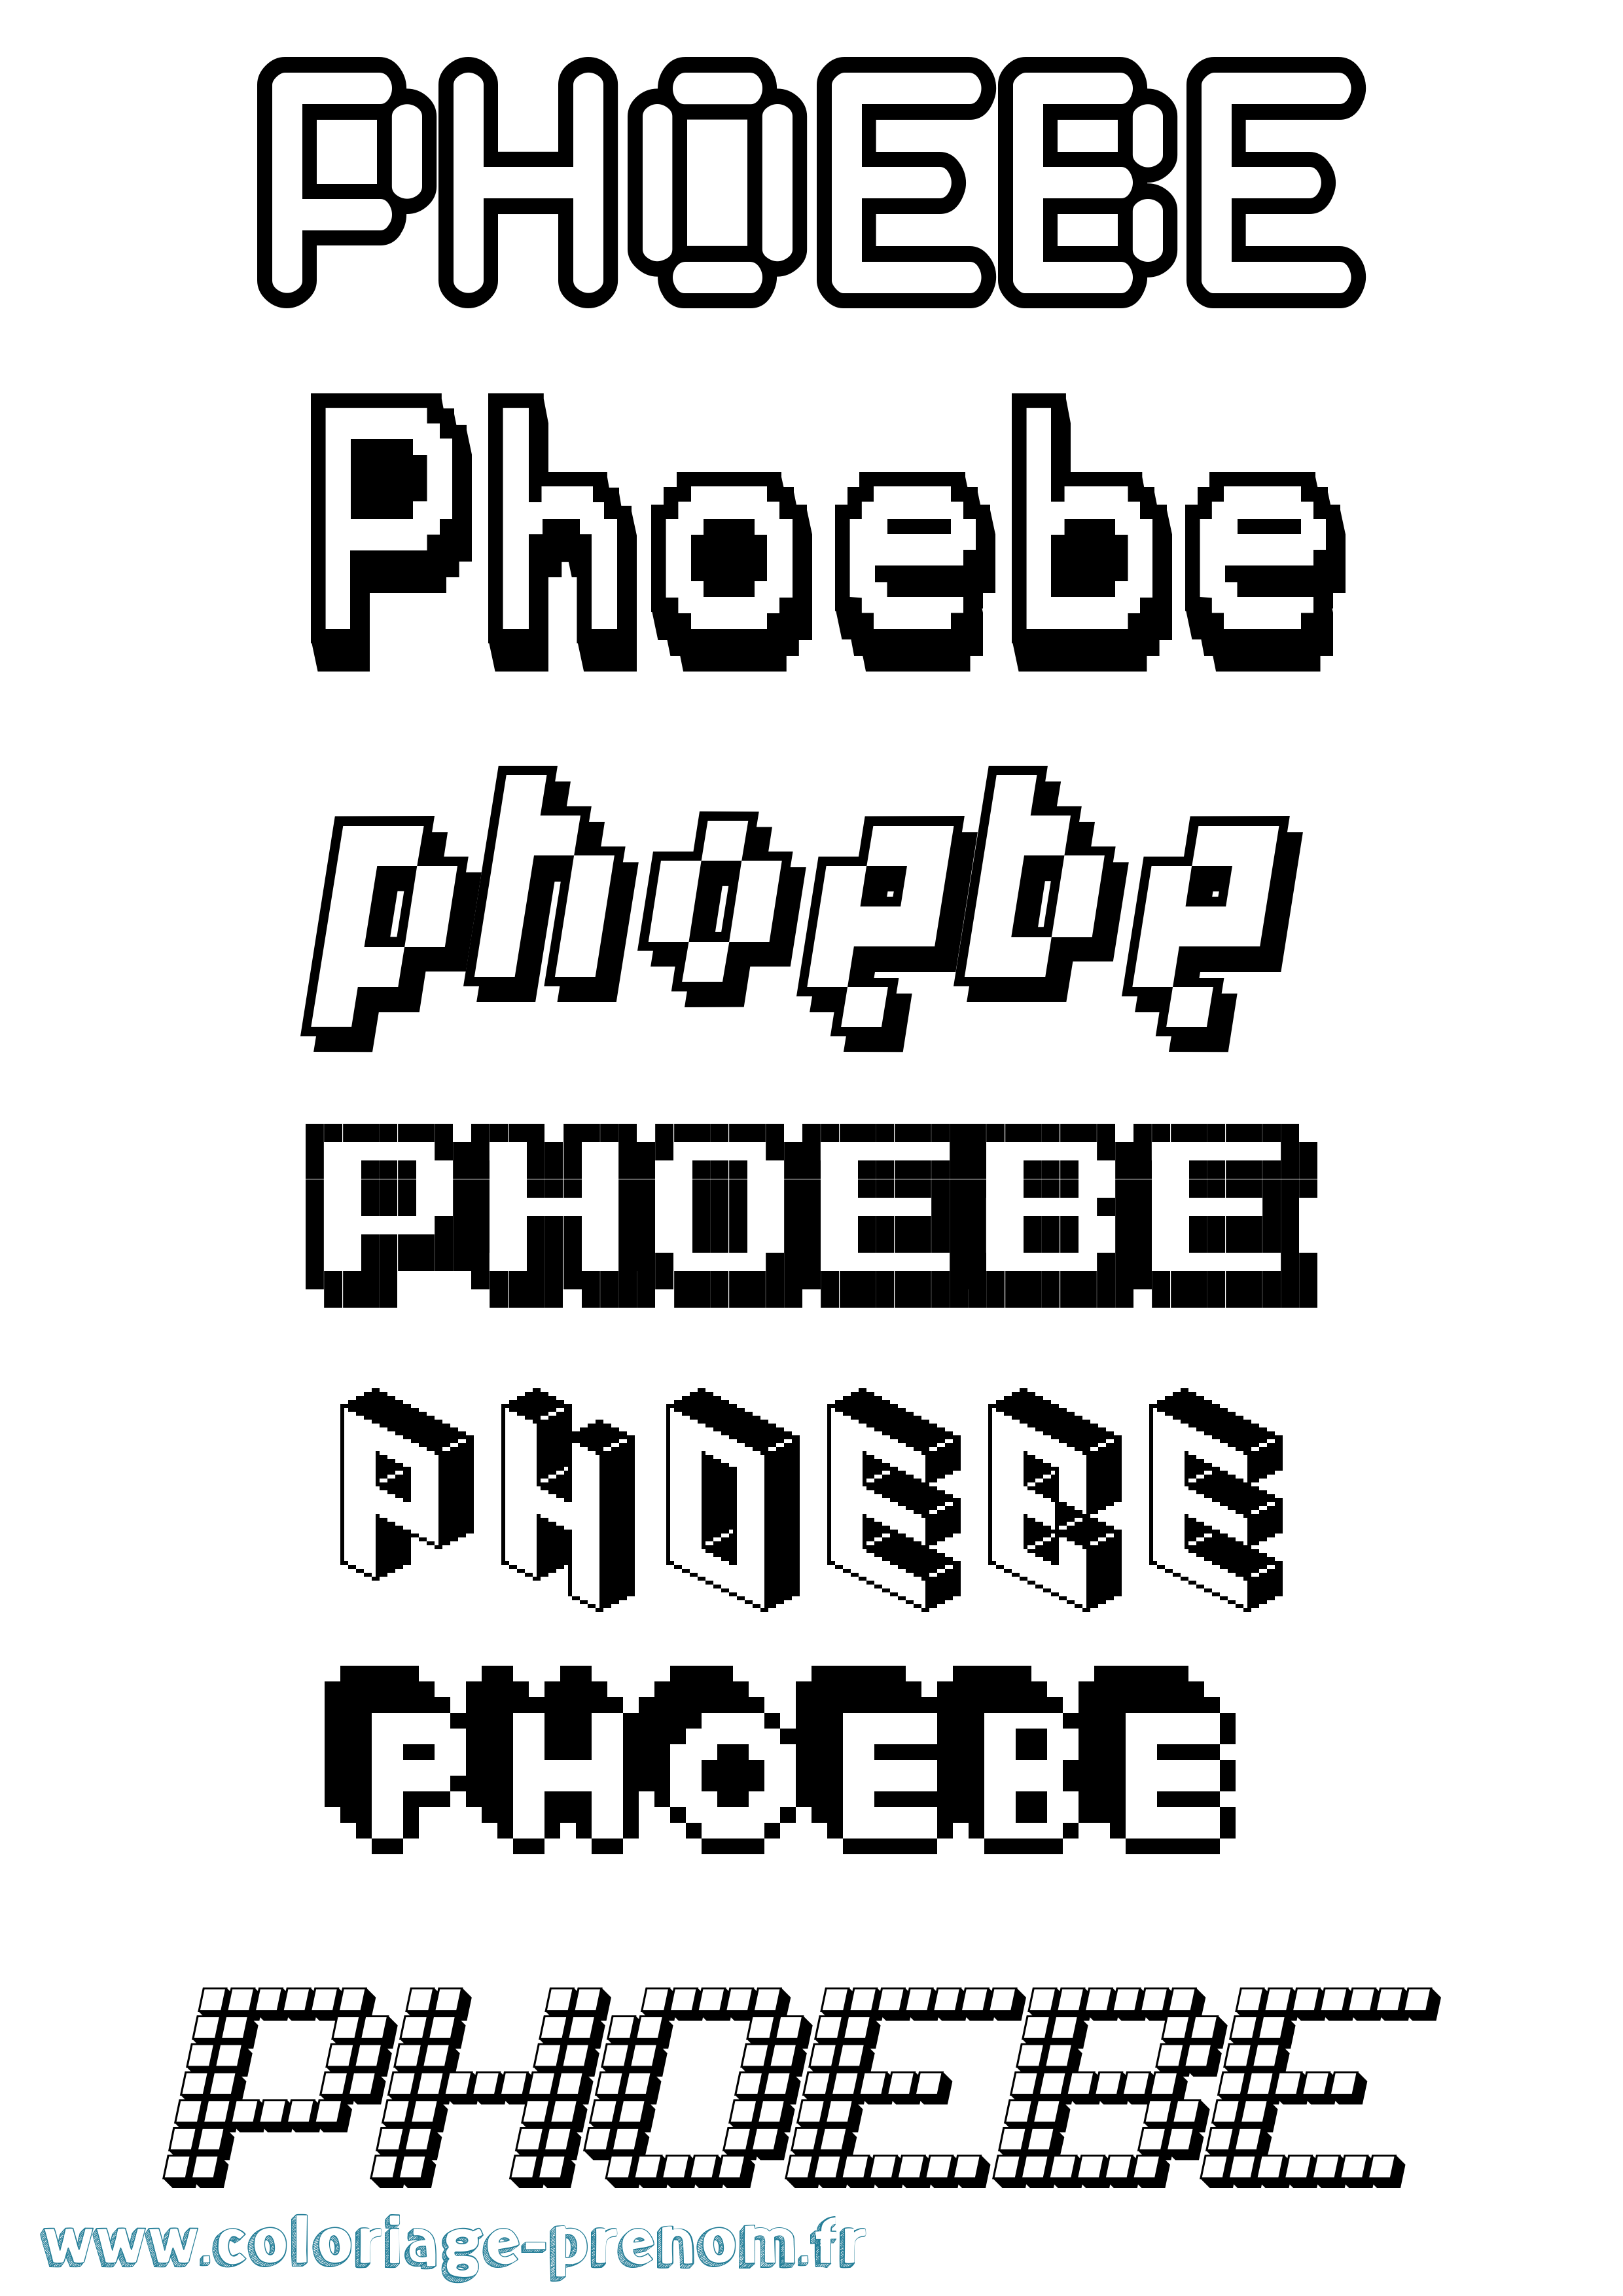 Coloriage prénom Phoebe Pixel